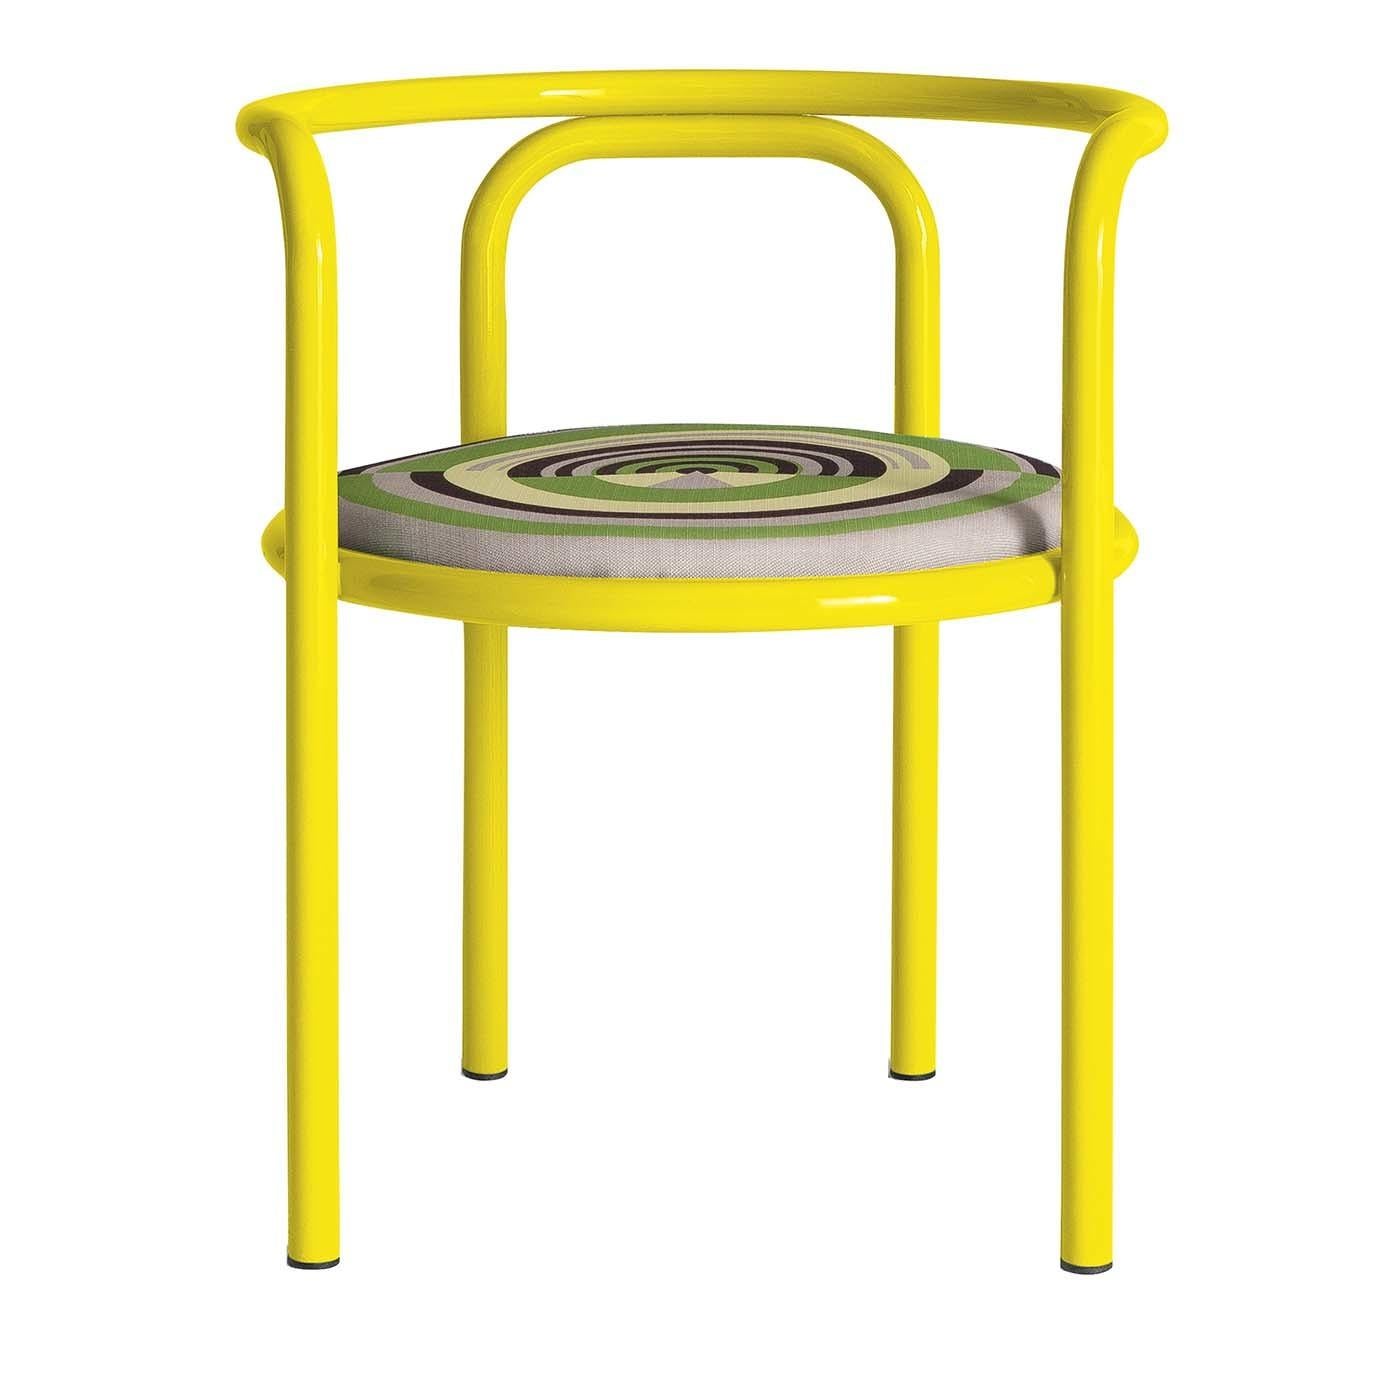 Dieser moderne Stuhl bietet Komfort, Stil und Qualität in einer verspielten und farbenfrohen Silhouette, die sich für jeden Außenbereich eignet. Die ursprüngliche Locus Solus Collection von Gae Aulenti aus dem Jahr 1964, die 2016 von Exteta neu